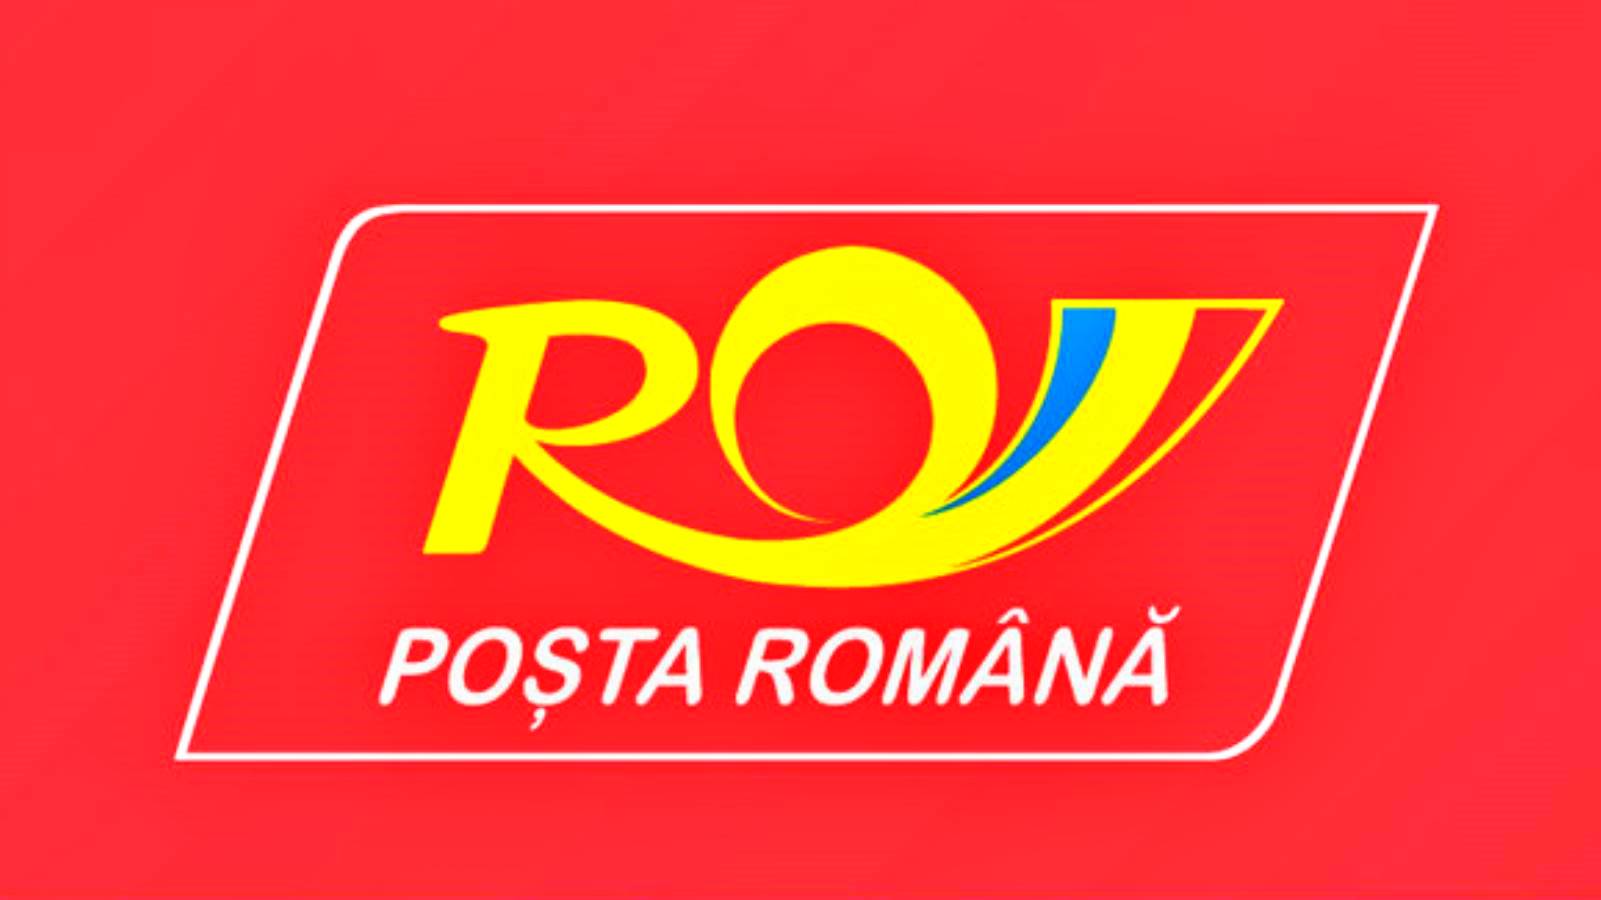 Rumänsk postförsäkring av försändelser för stöld, förstörelse